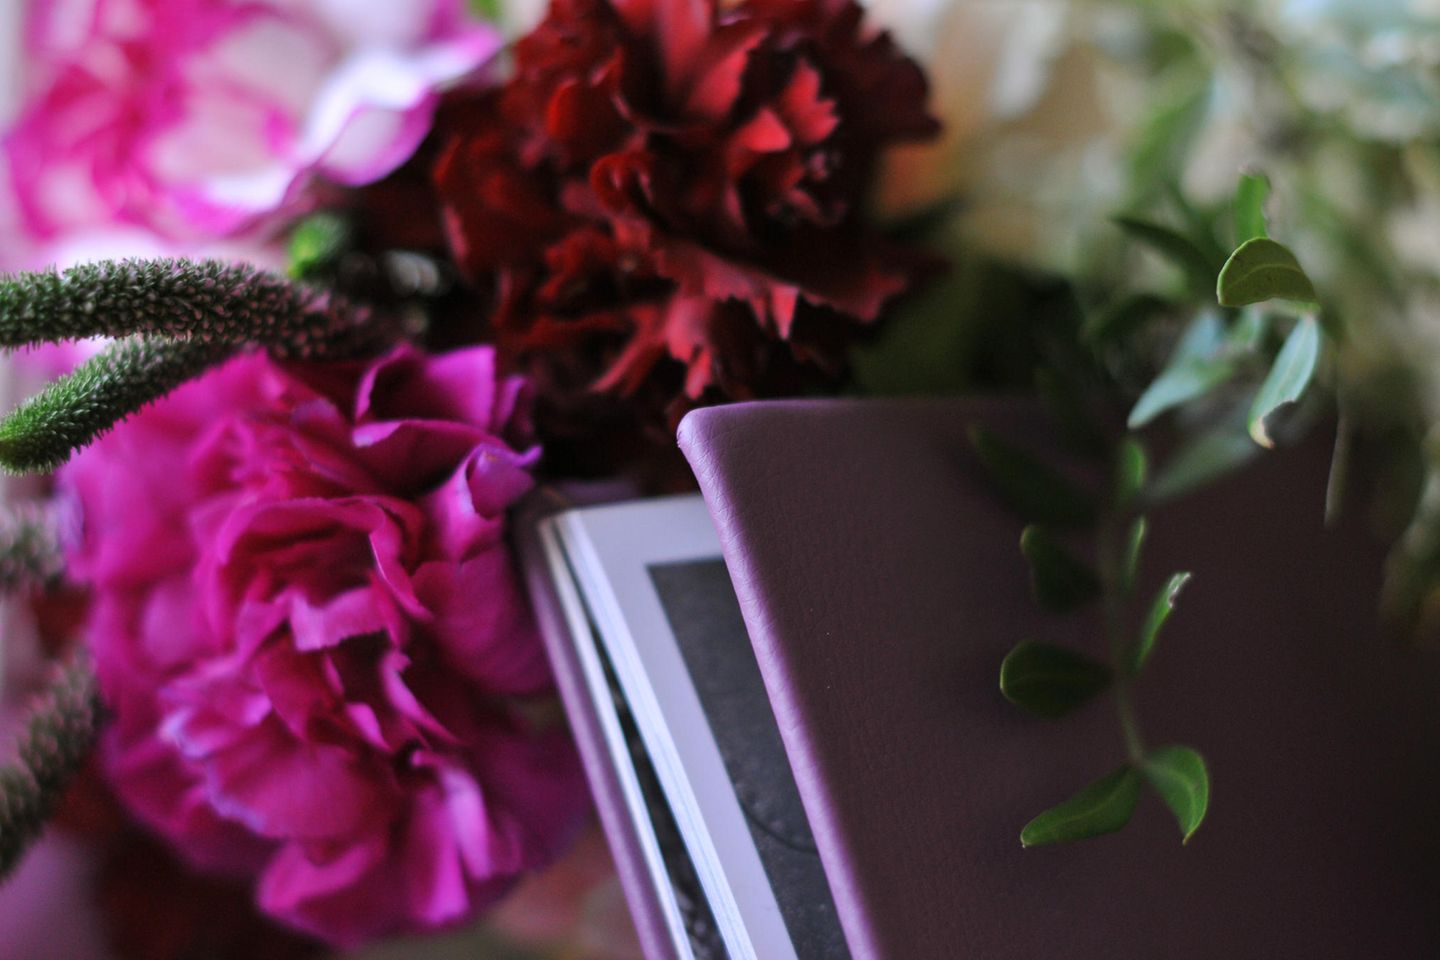 Mann plant Hochzeitstag nach Tod: Blumen und Buch